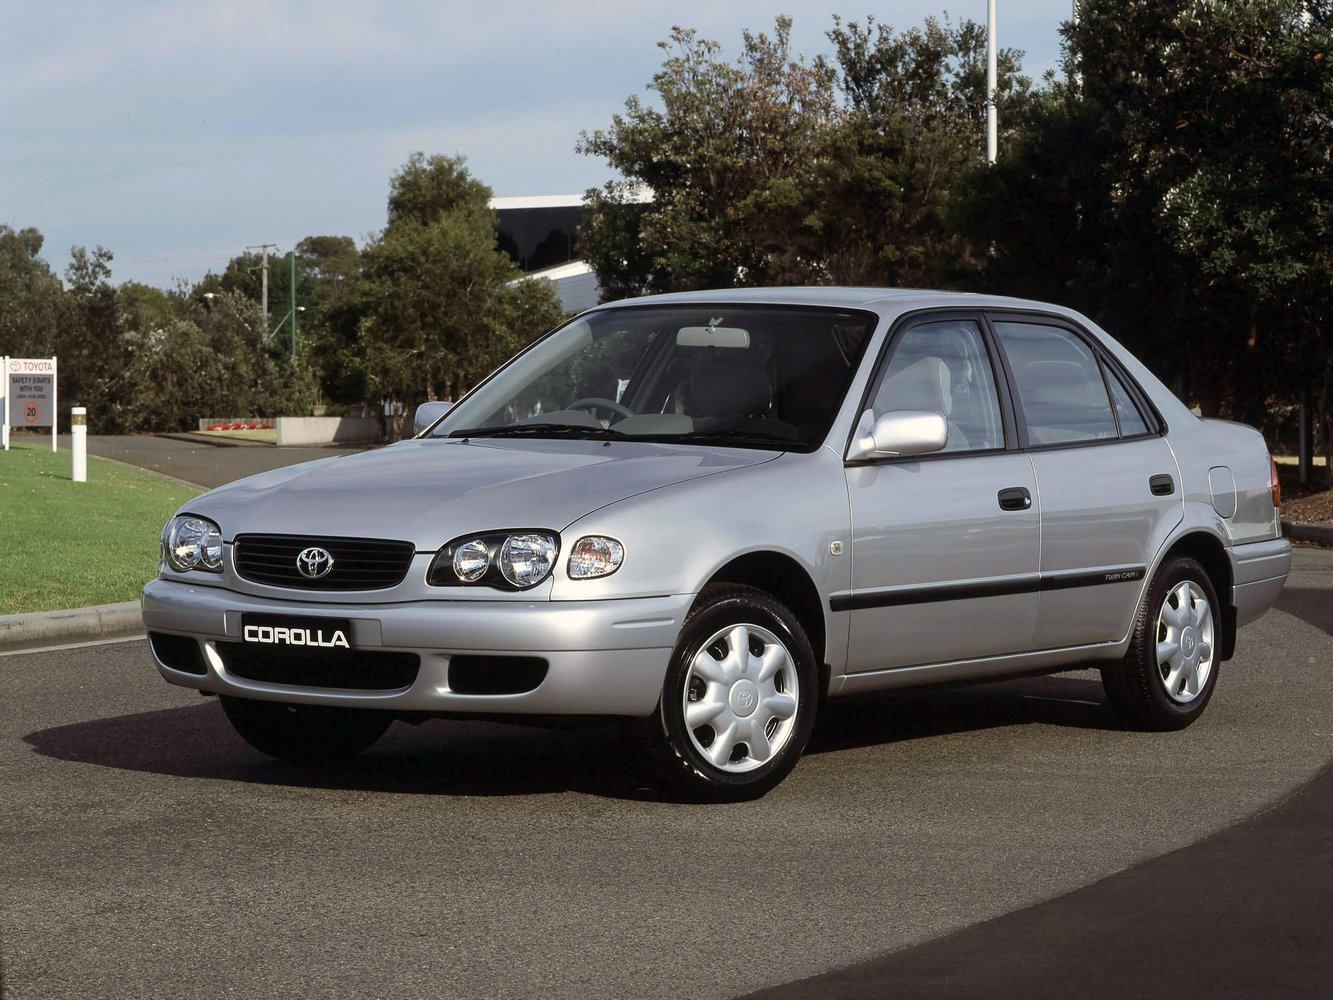 седан Toyota Corolla 1999 - 2002г выпуска модификация 1.3 AT (85 л.с.)